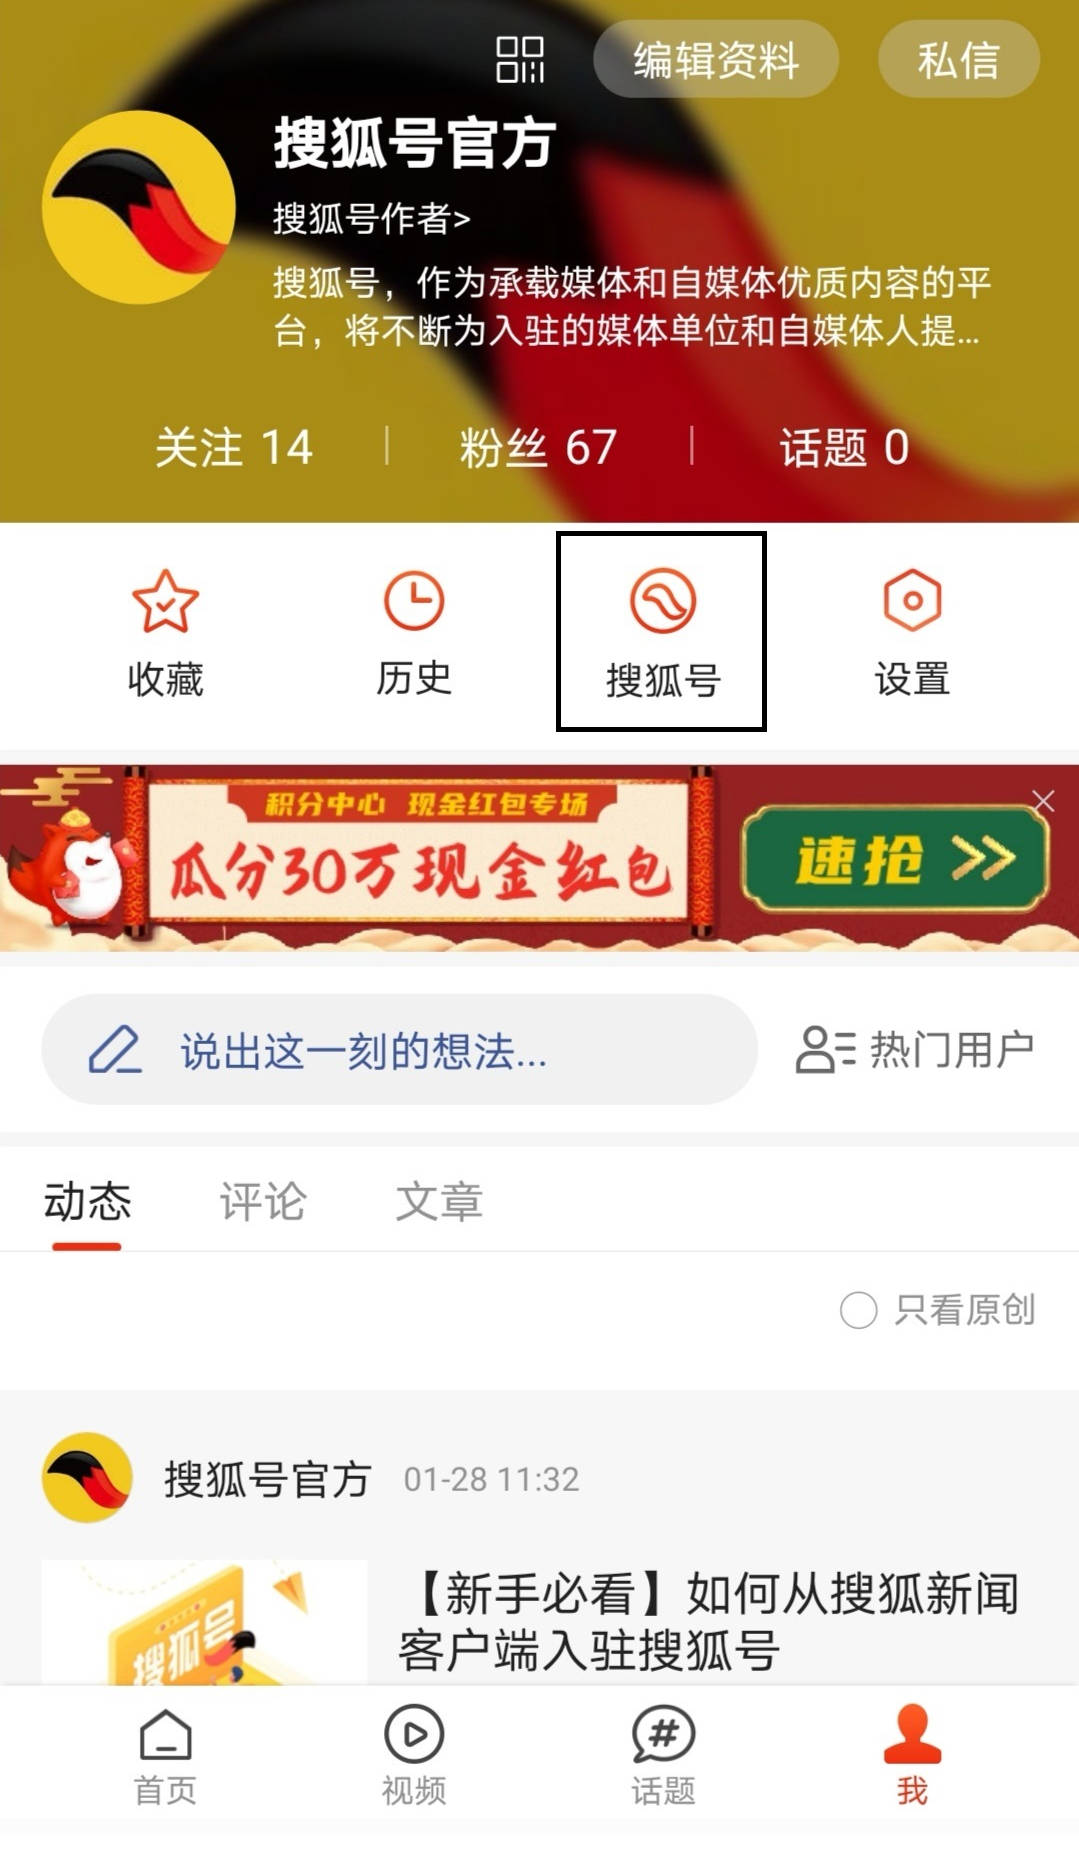 搜狐视频logo图片素材免费下载 - 觅知网